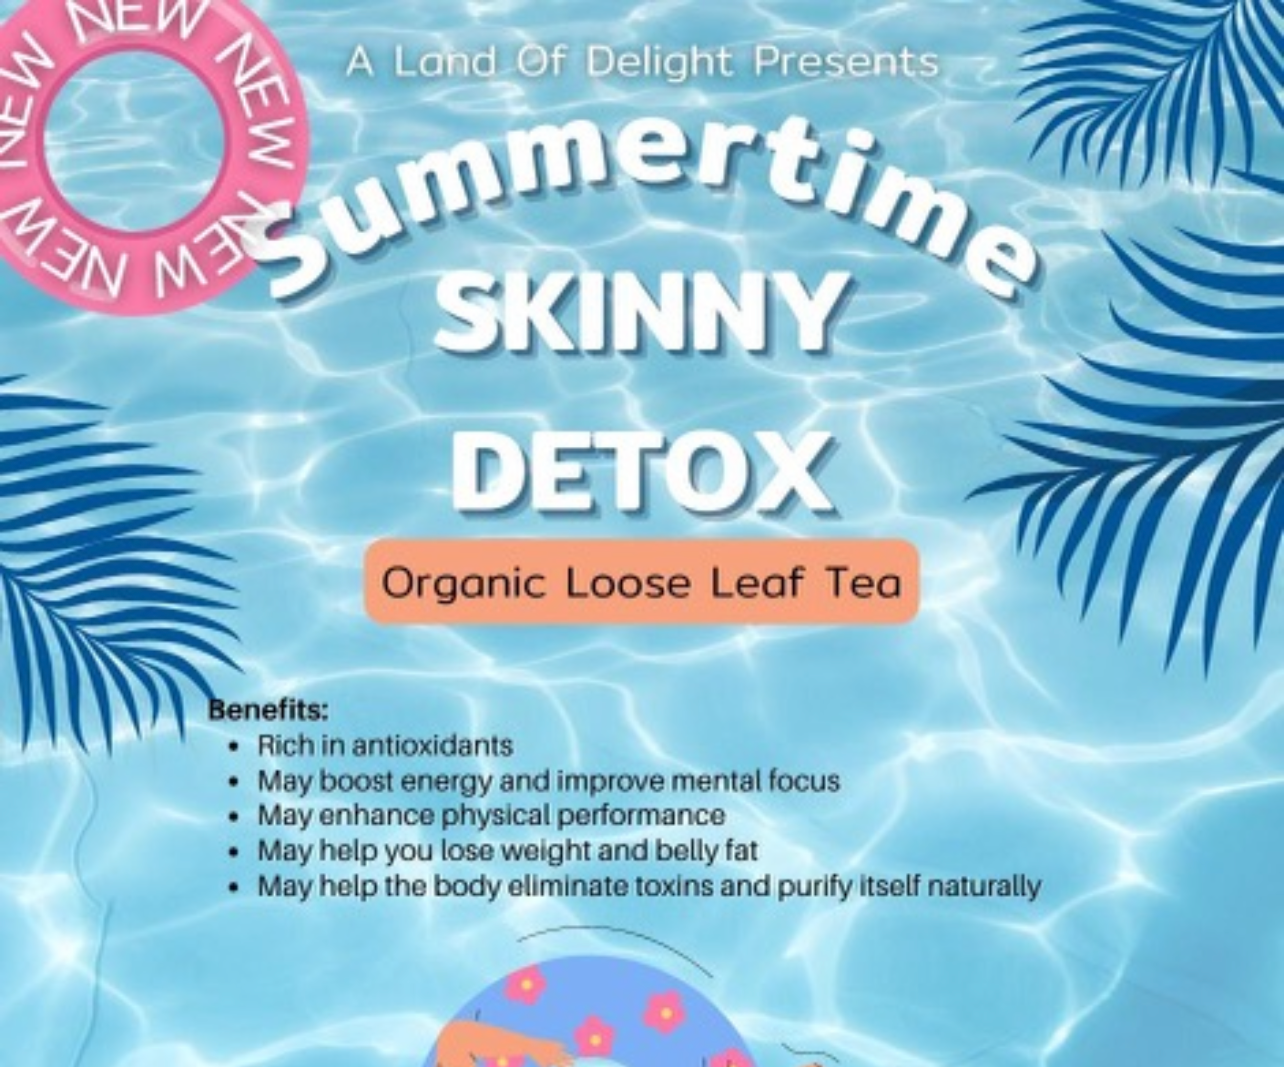 Summertime Skinny Detox